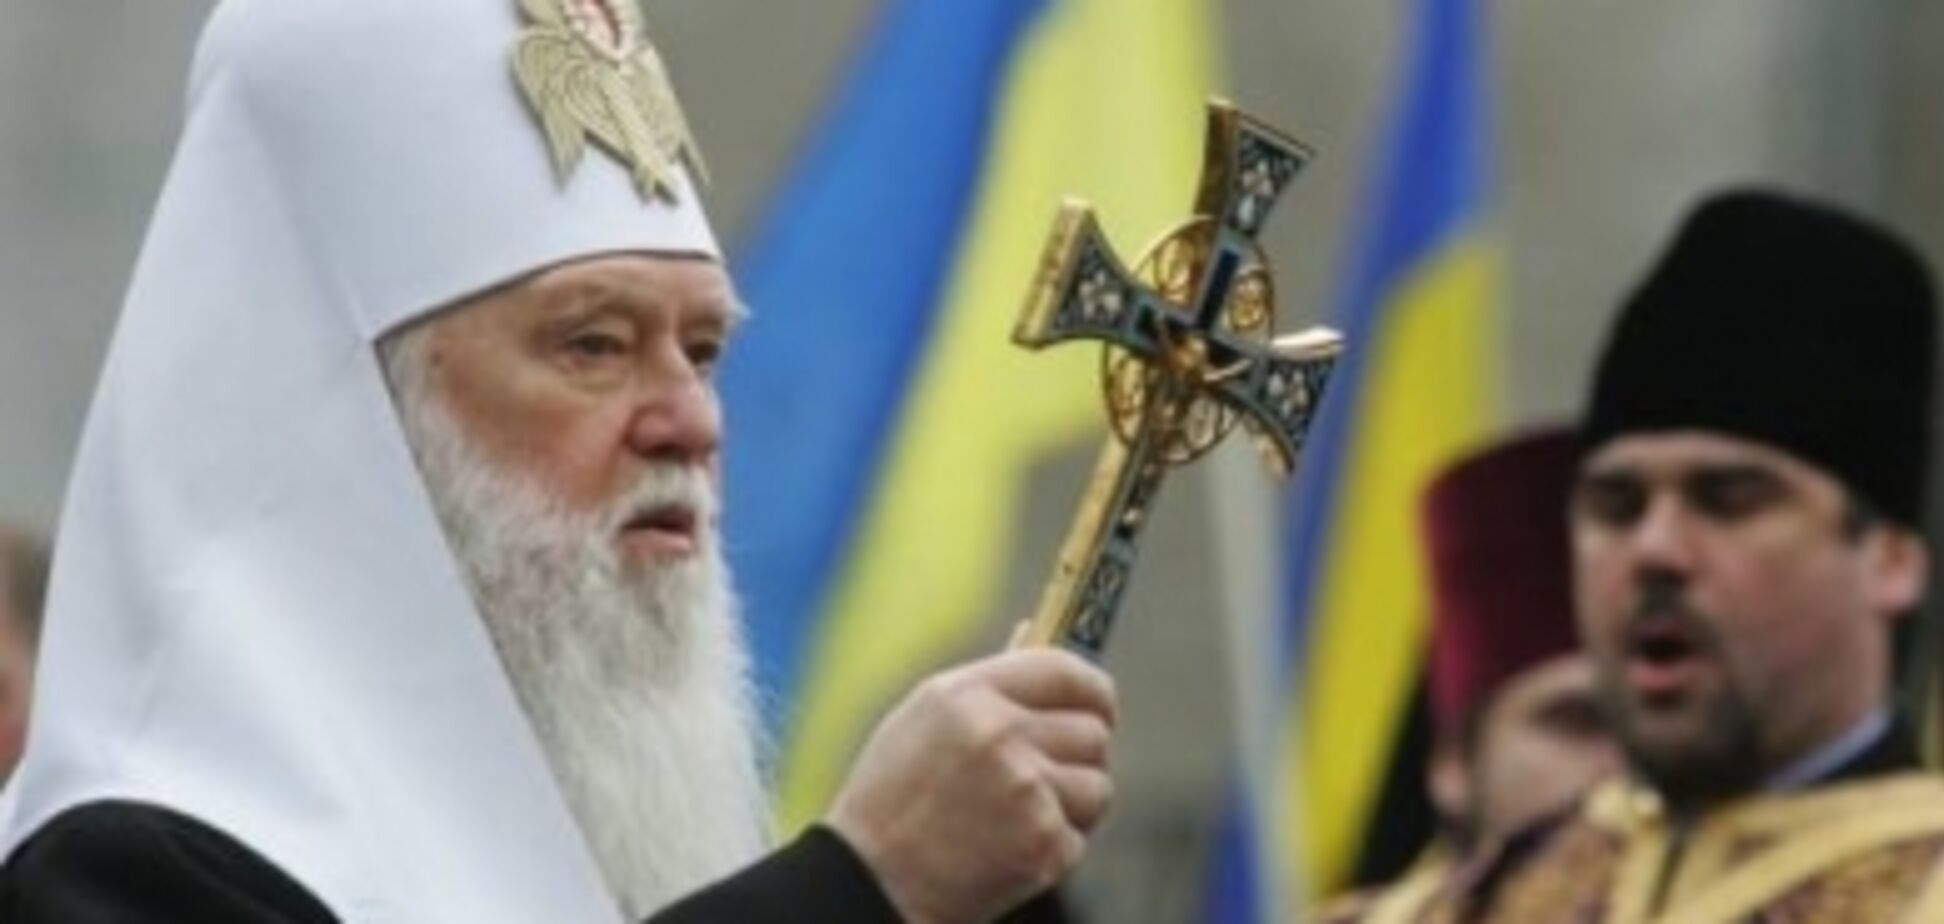 Единая церковь: как украинцы восприняли идею Порошенко